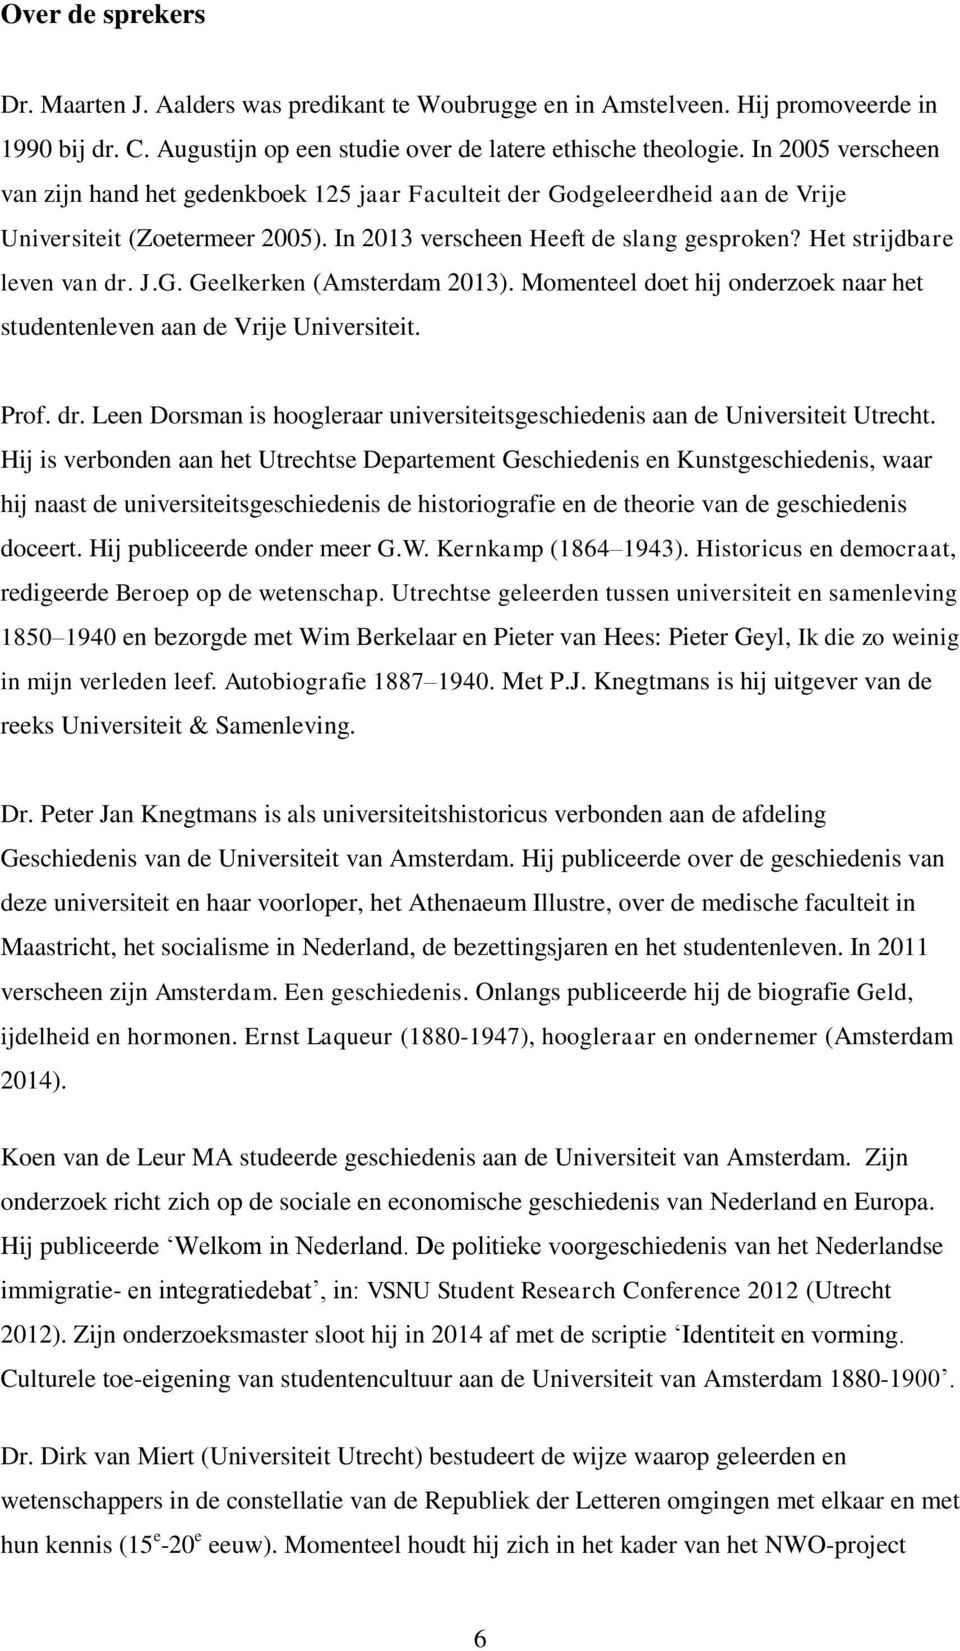 Het strijdbare leven van dr. J.G. Geelkerken (Amsterdam 2013). Momenteel doet hij onderzoek naar het studentenleven aan de Vrije Universiteit. Prof. dr. Leen Dorsman is hoogleraar universiteitsgeschiedenis aan de Universiteit Utrecht.